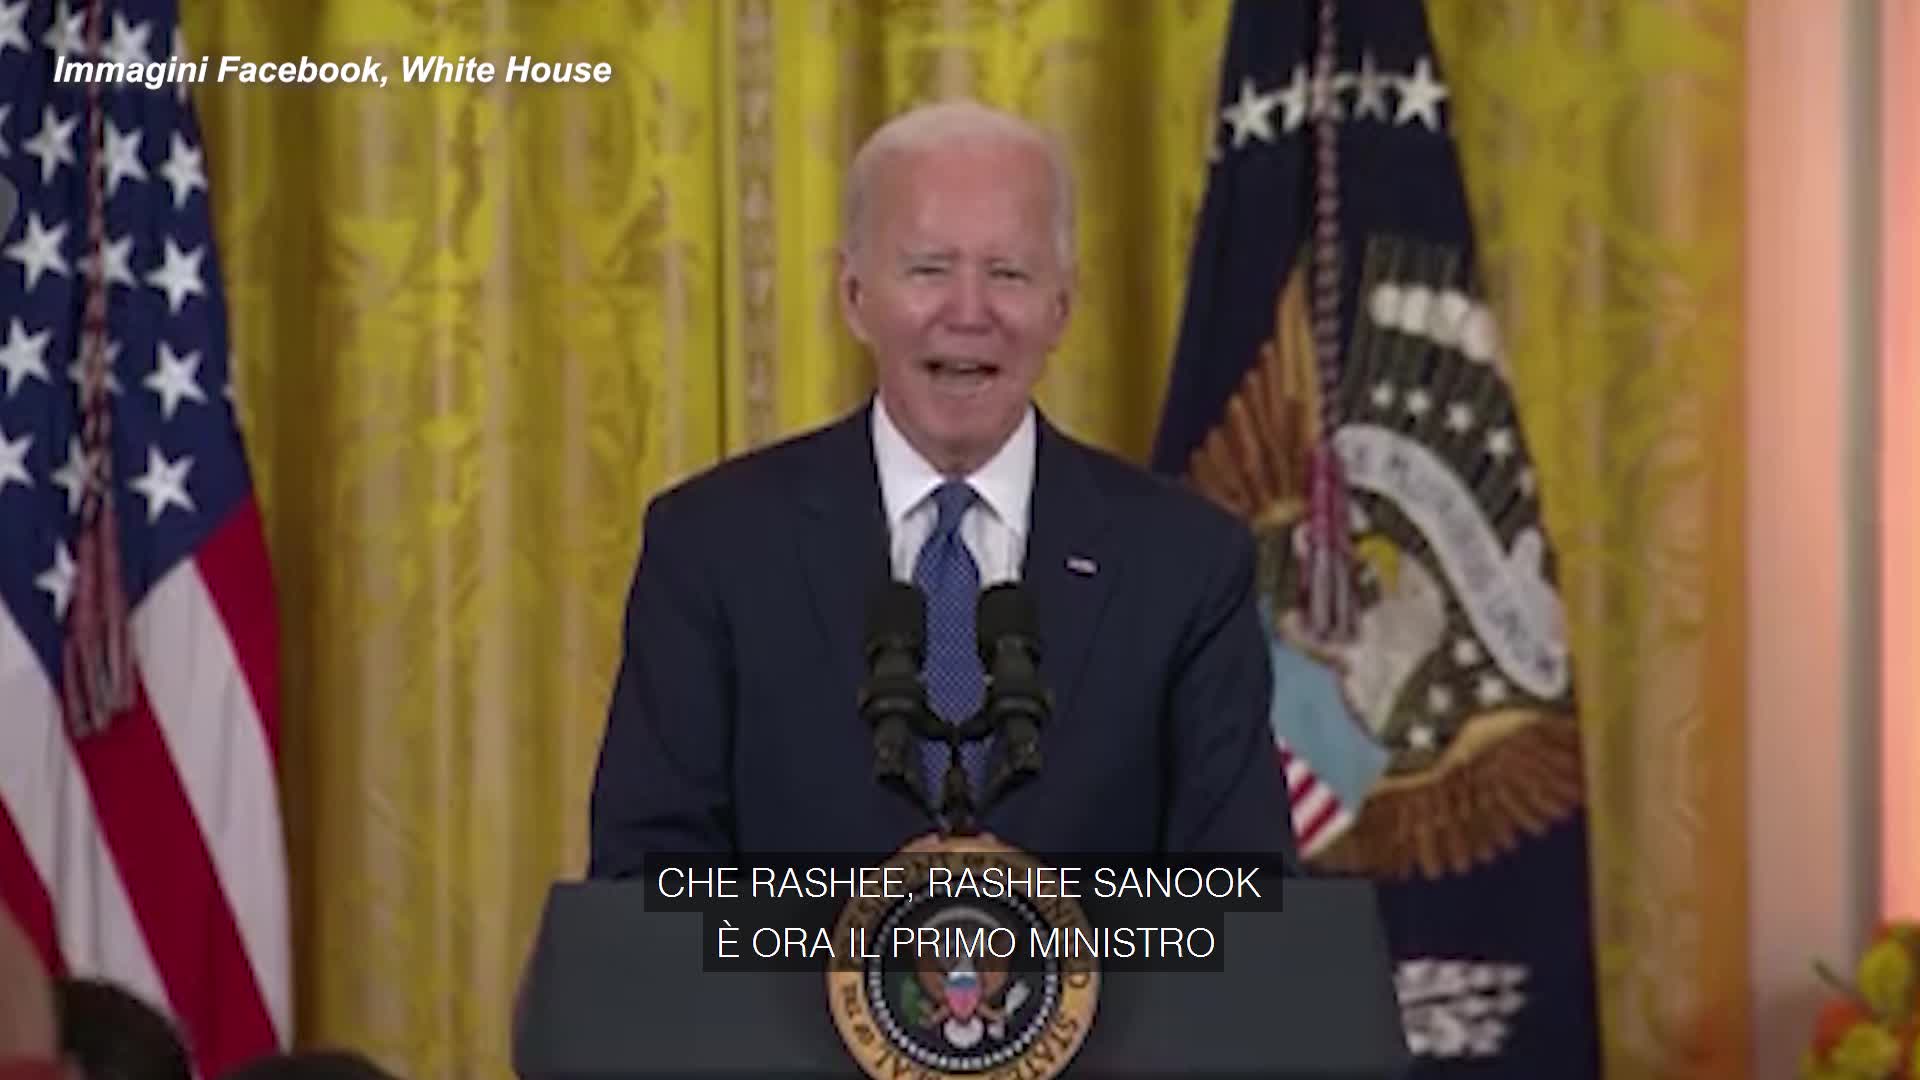 Usa, Biden sbaglia il nome del premier inglese e lo chiama "Rashee Sanook" - VIDEO